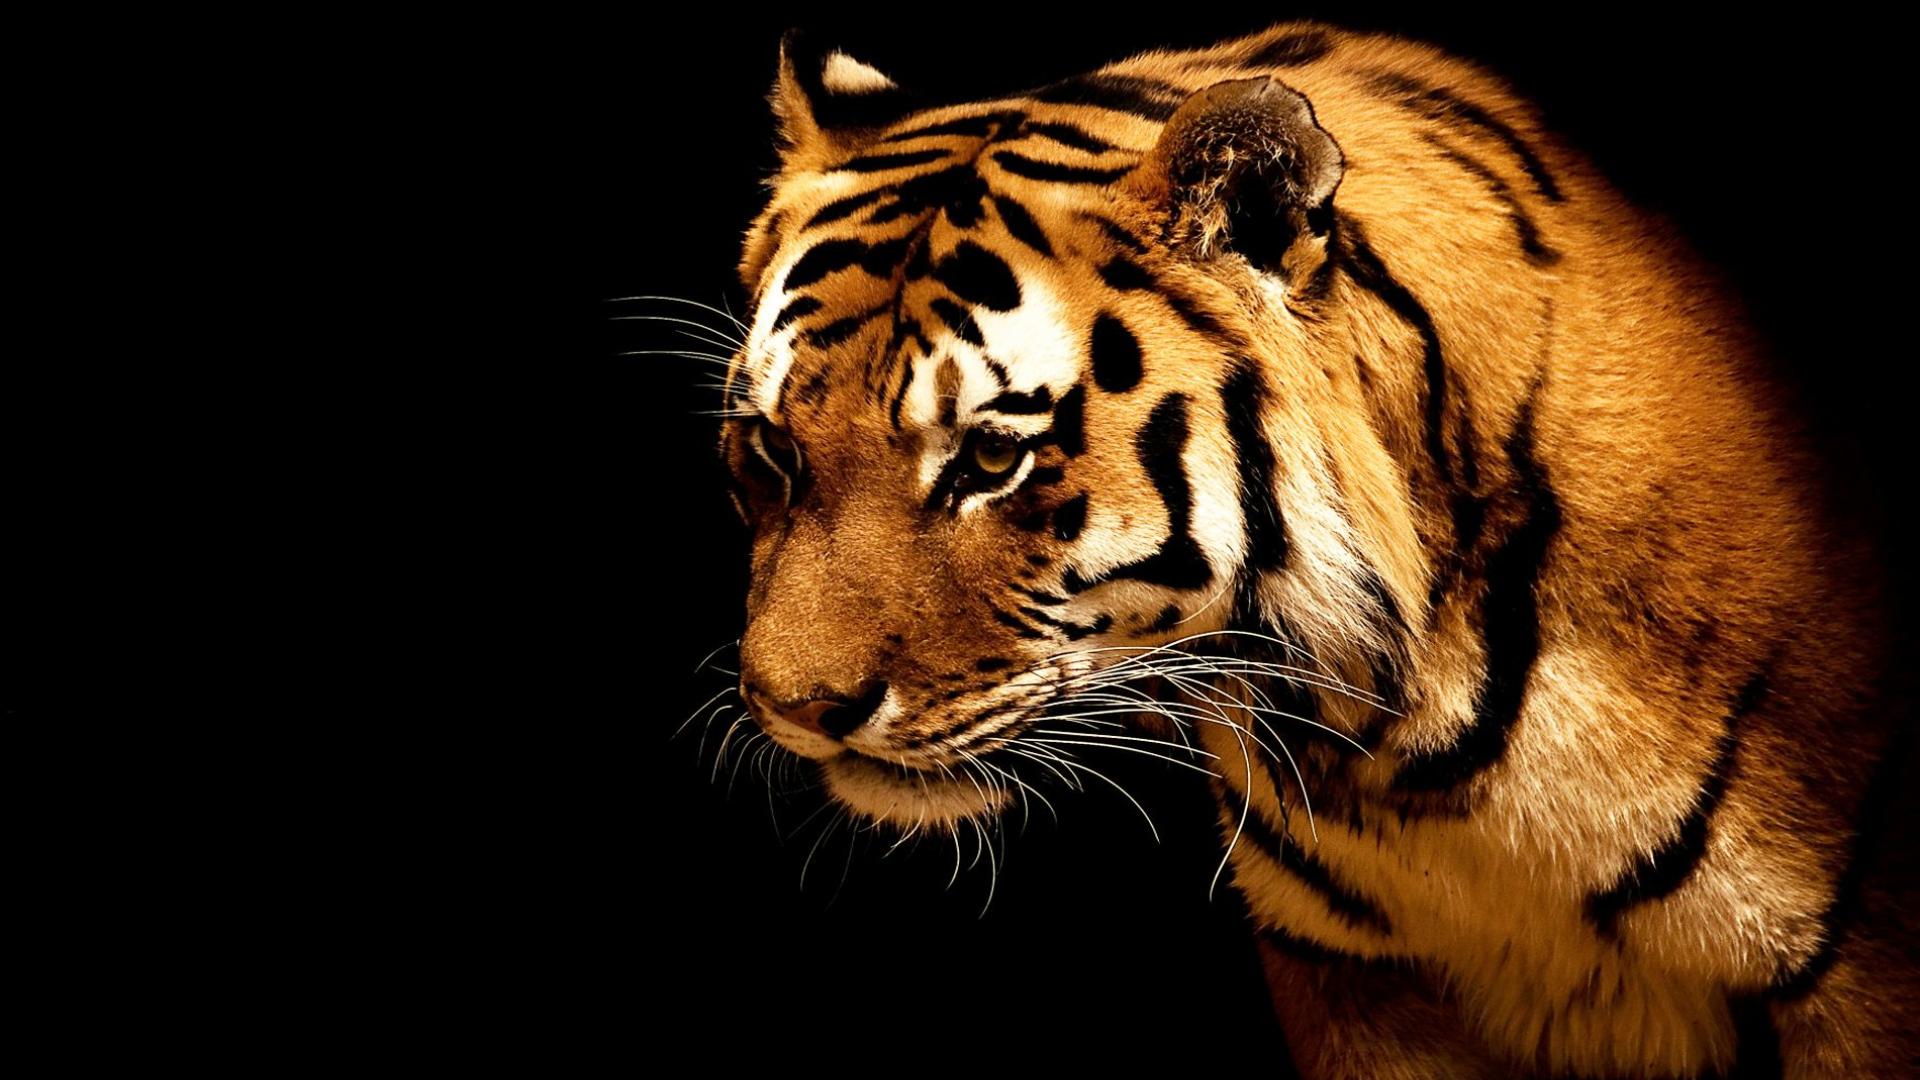 Tiger Wallpaper Hq